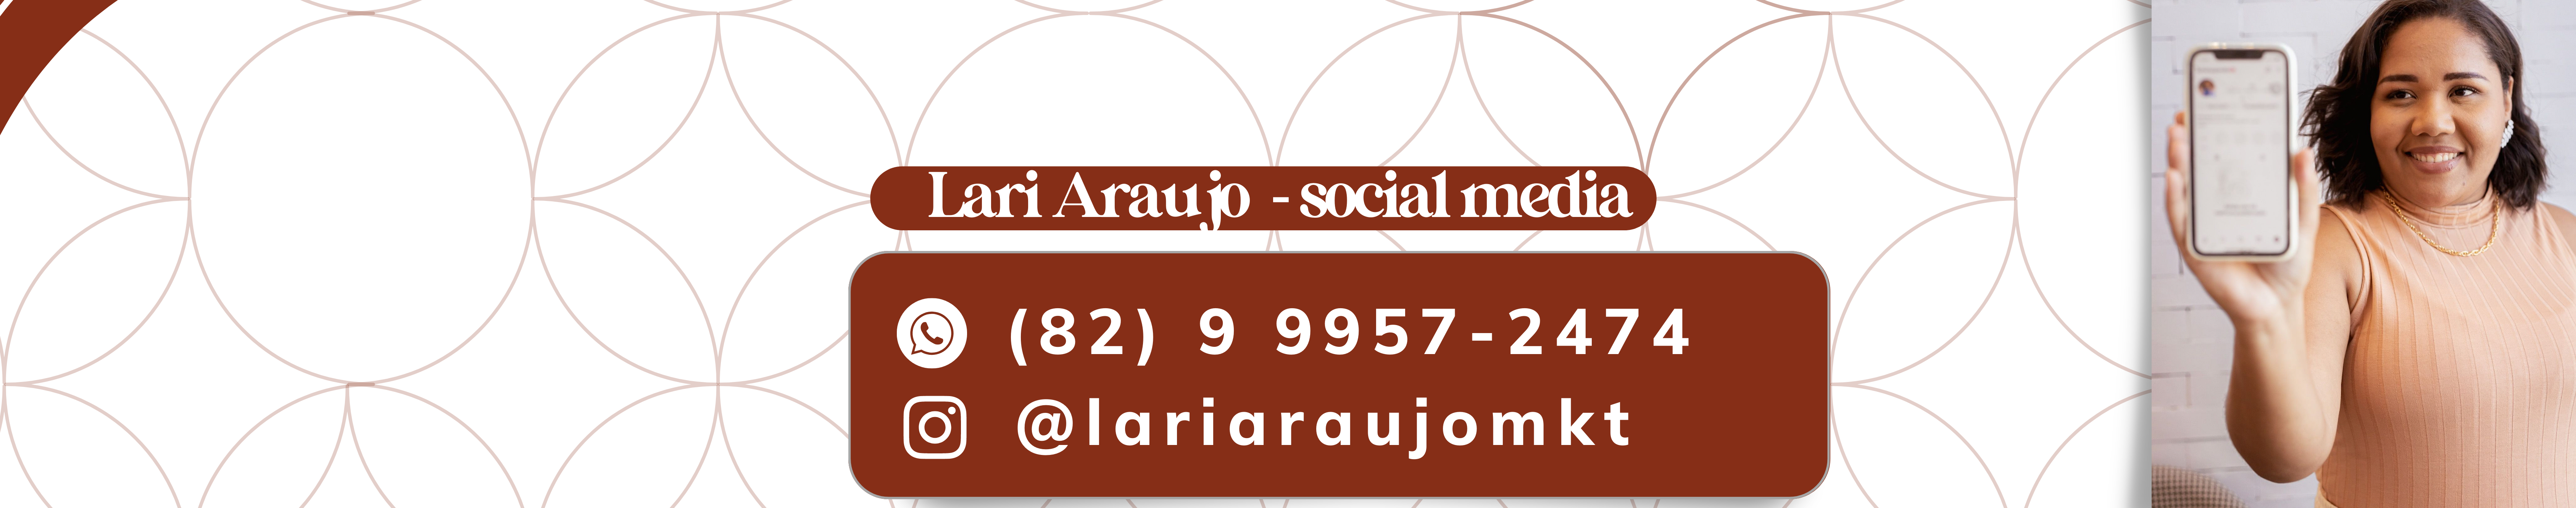 Larissa Araujo's profile banner